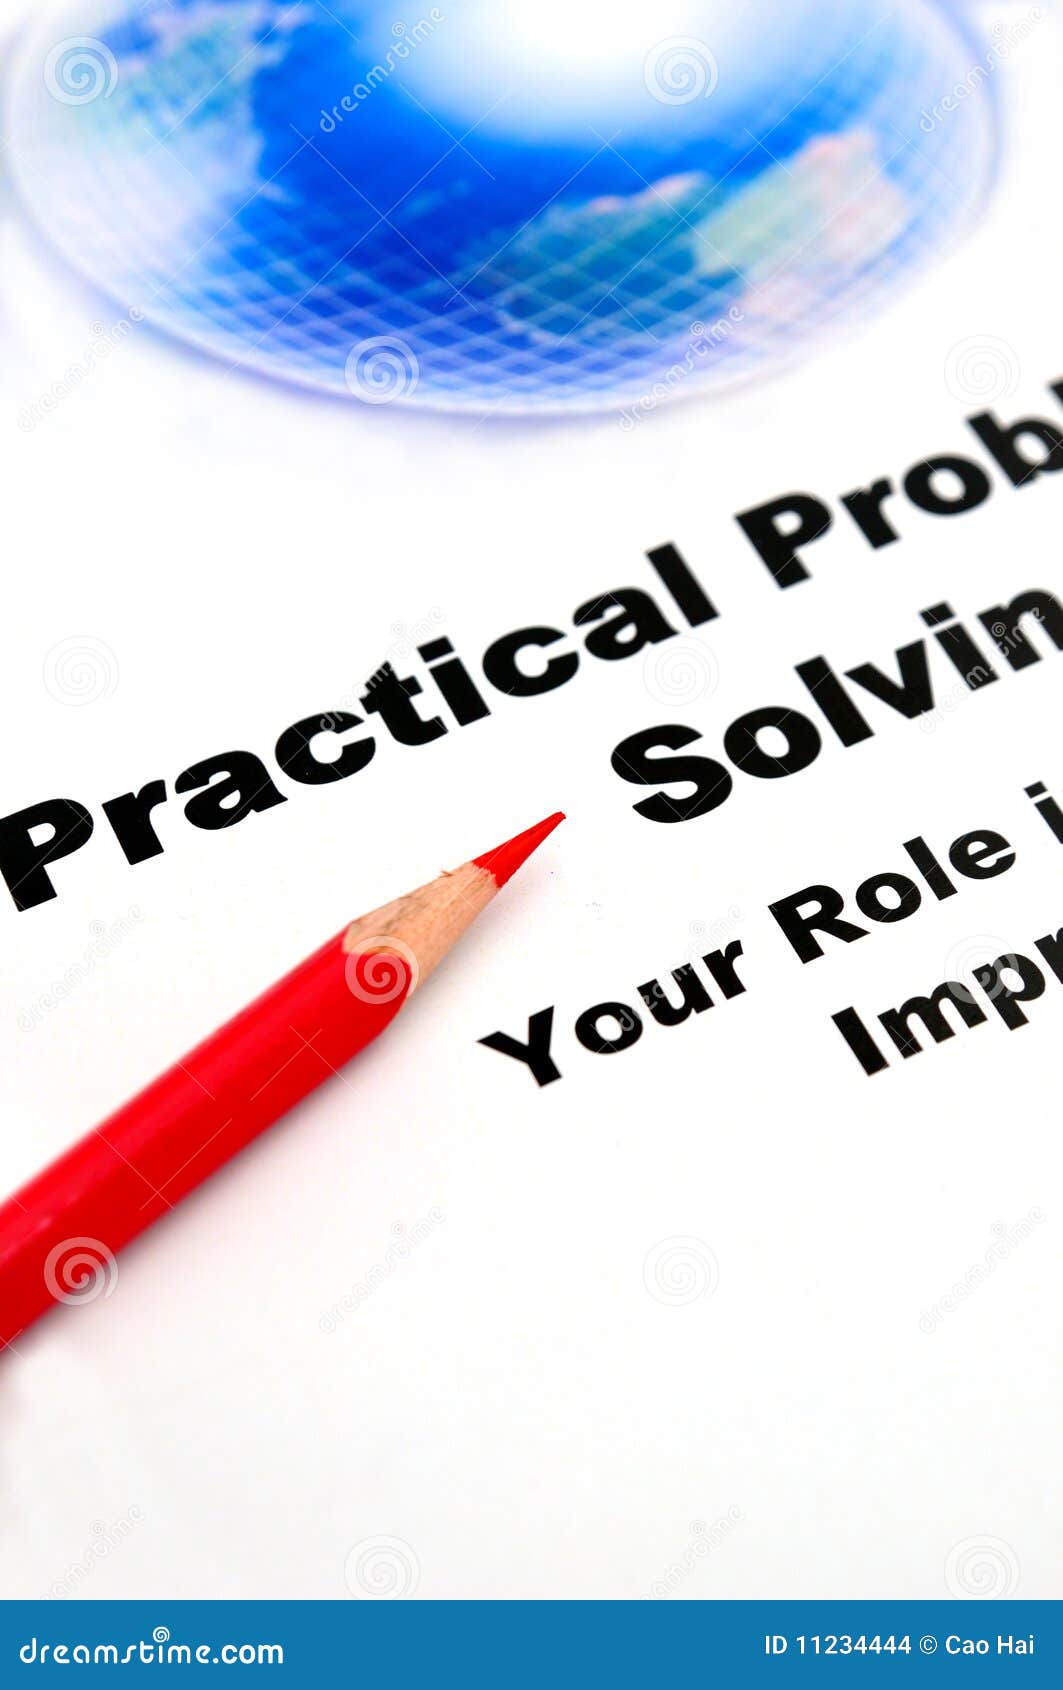 business concept, practical problem solving